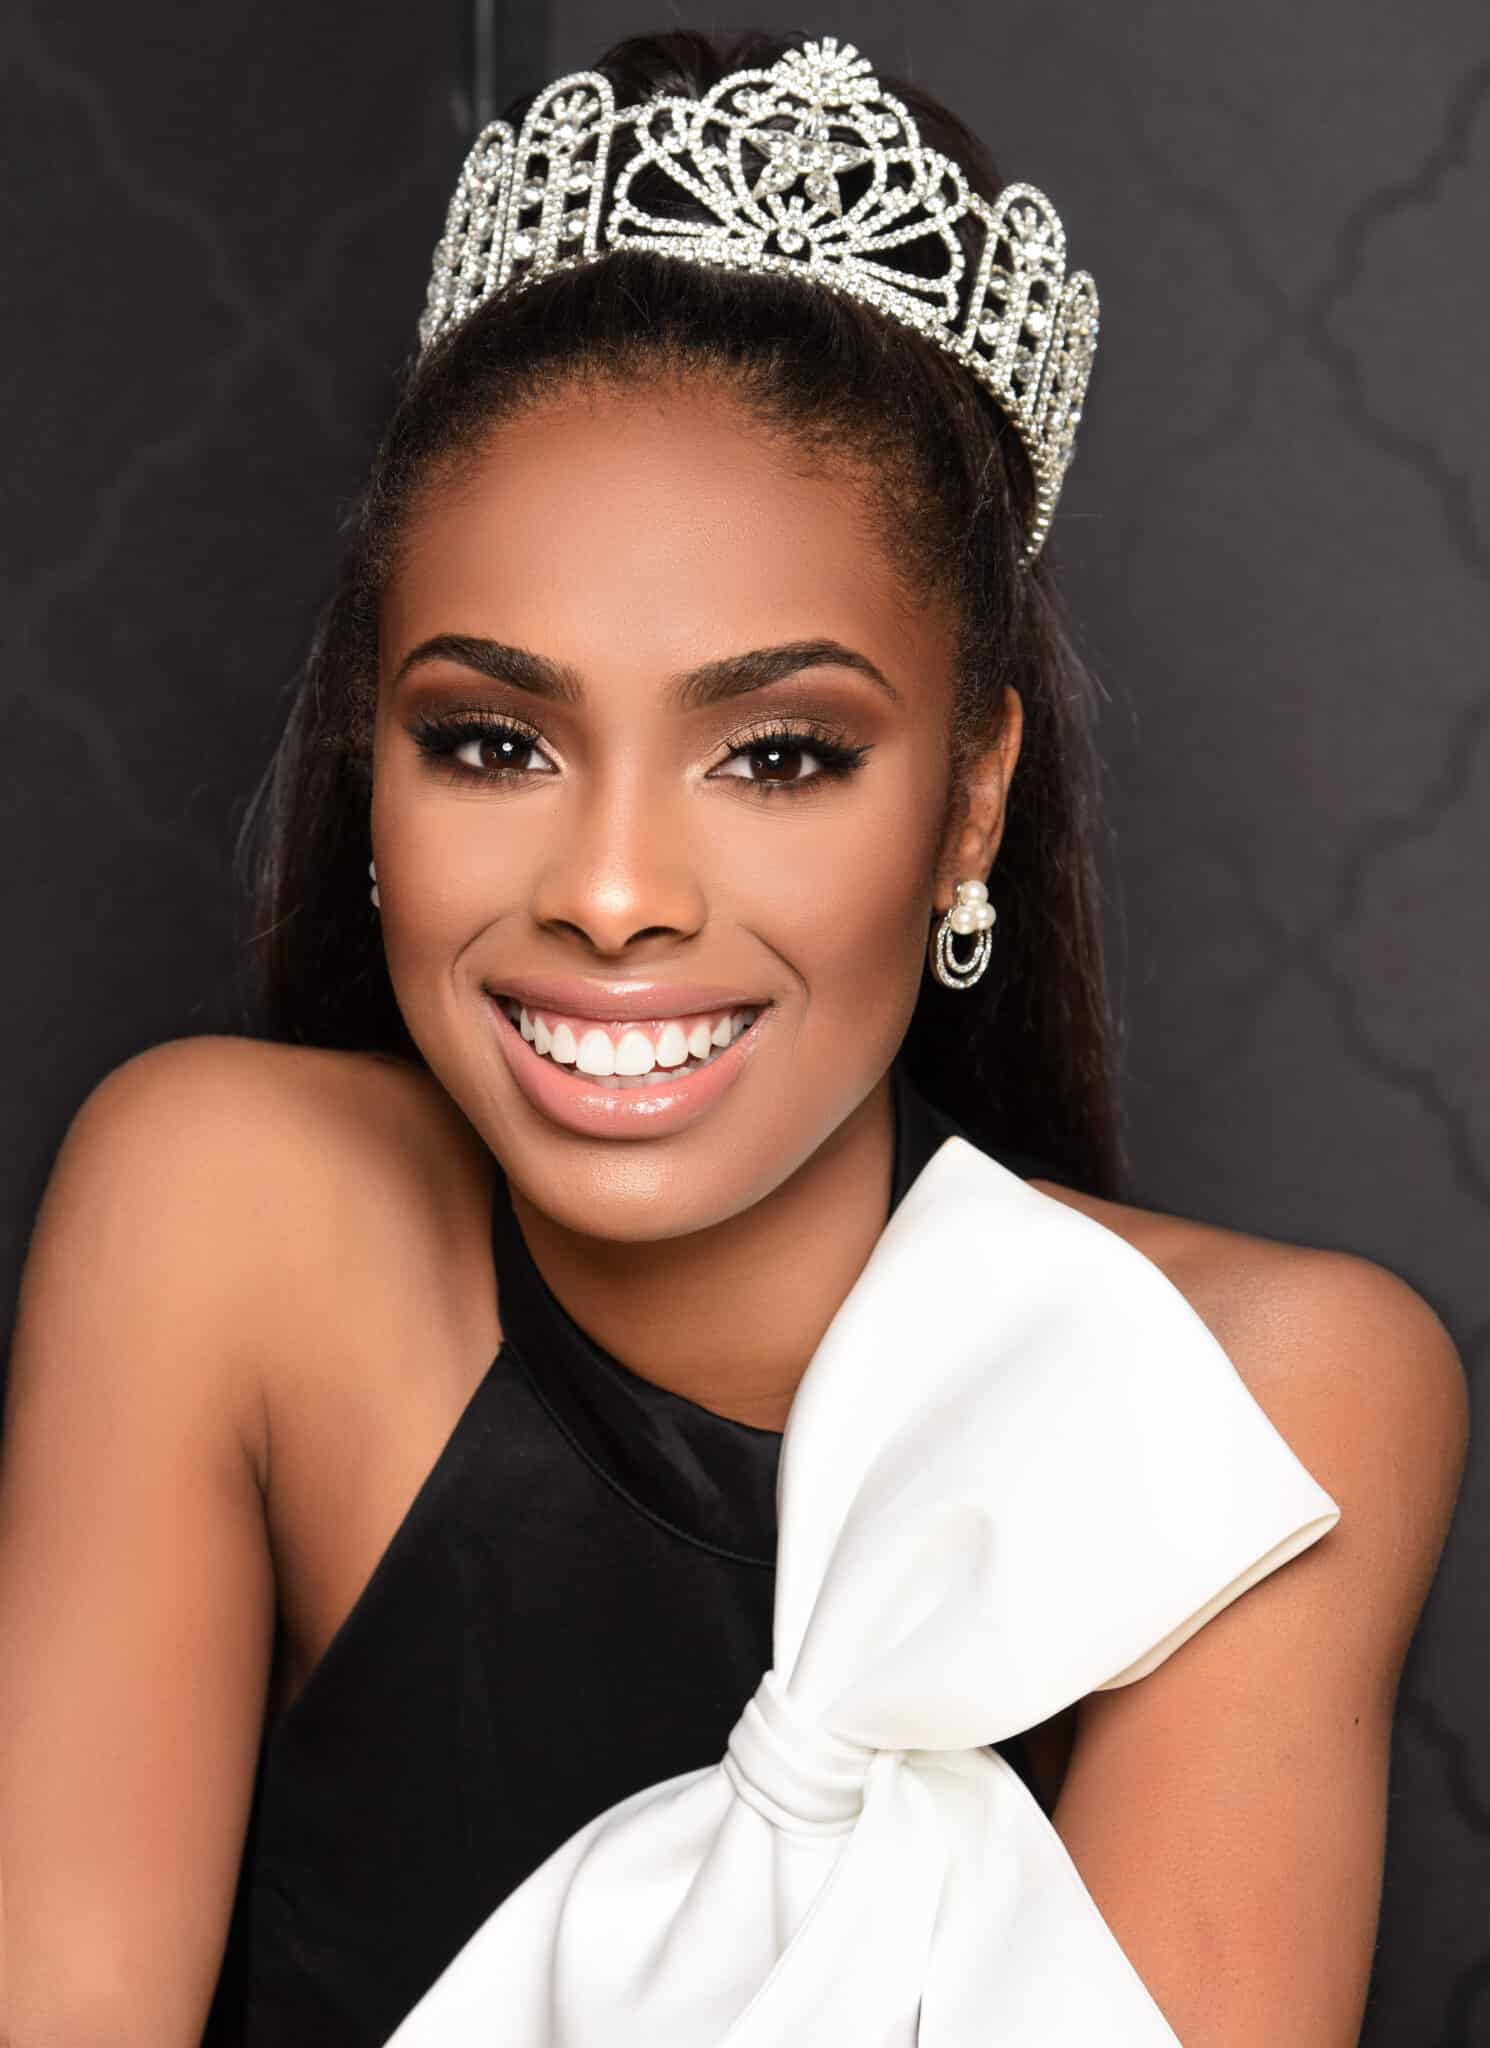 Kennedy Edwards Miss Texas Teen USA 2019 | Smile Texas Houston TX